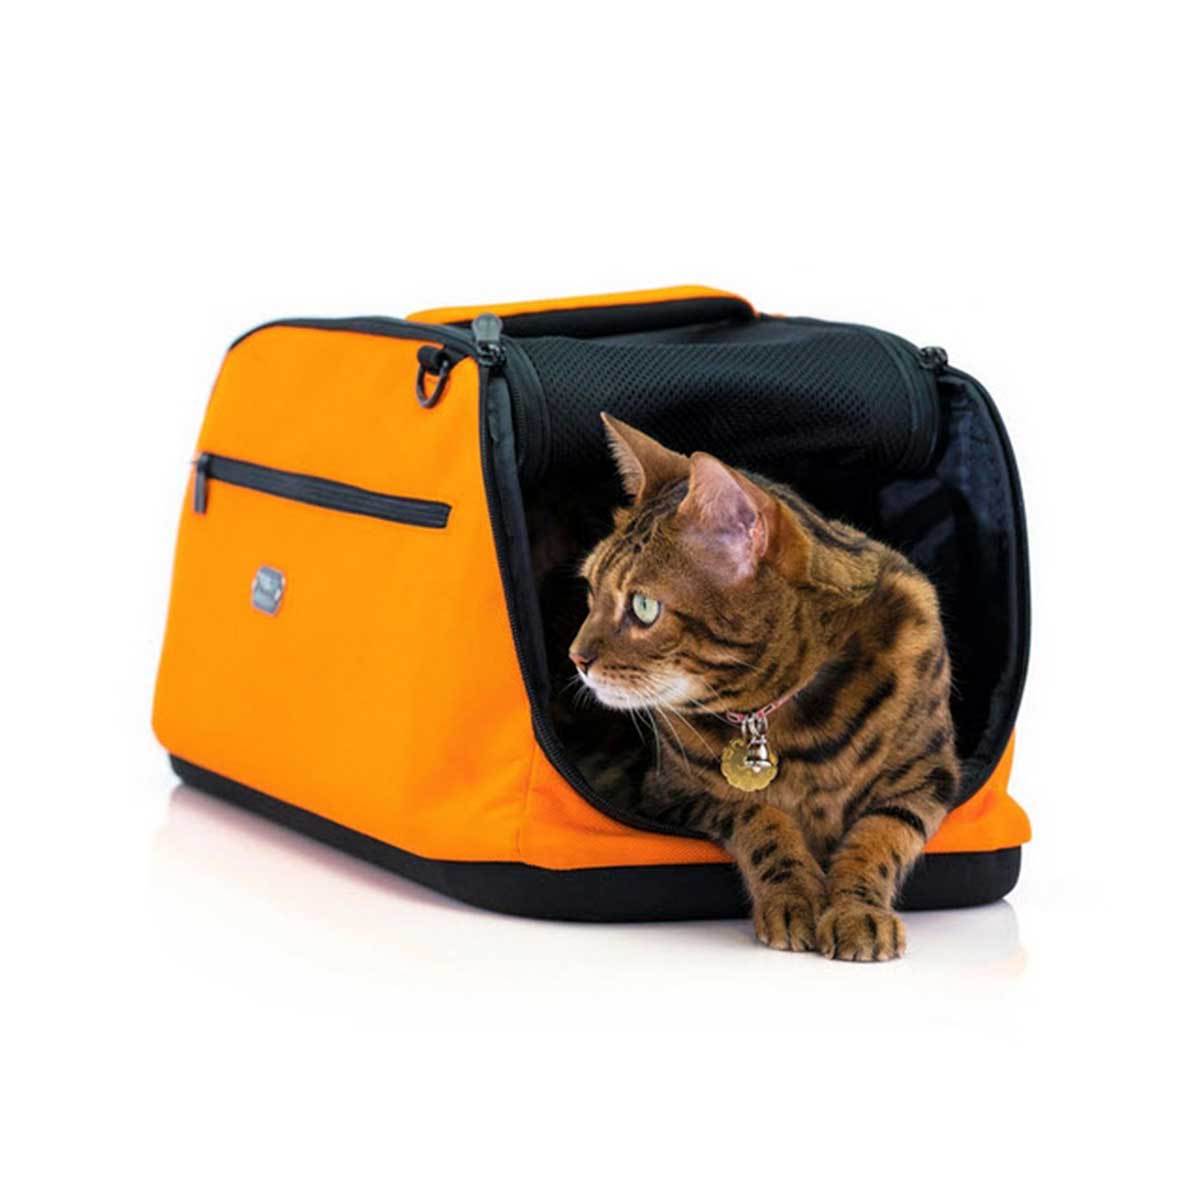 Sleepypod Air Dog Carrier in Orange Dream | Pawlicious & Company